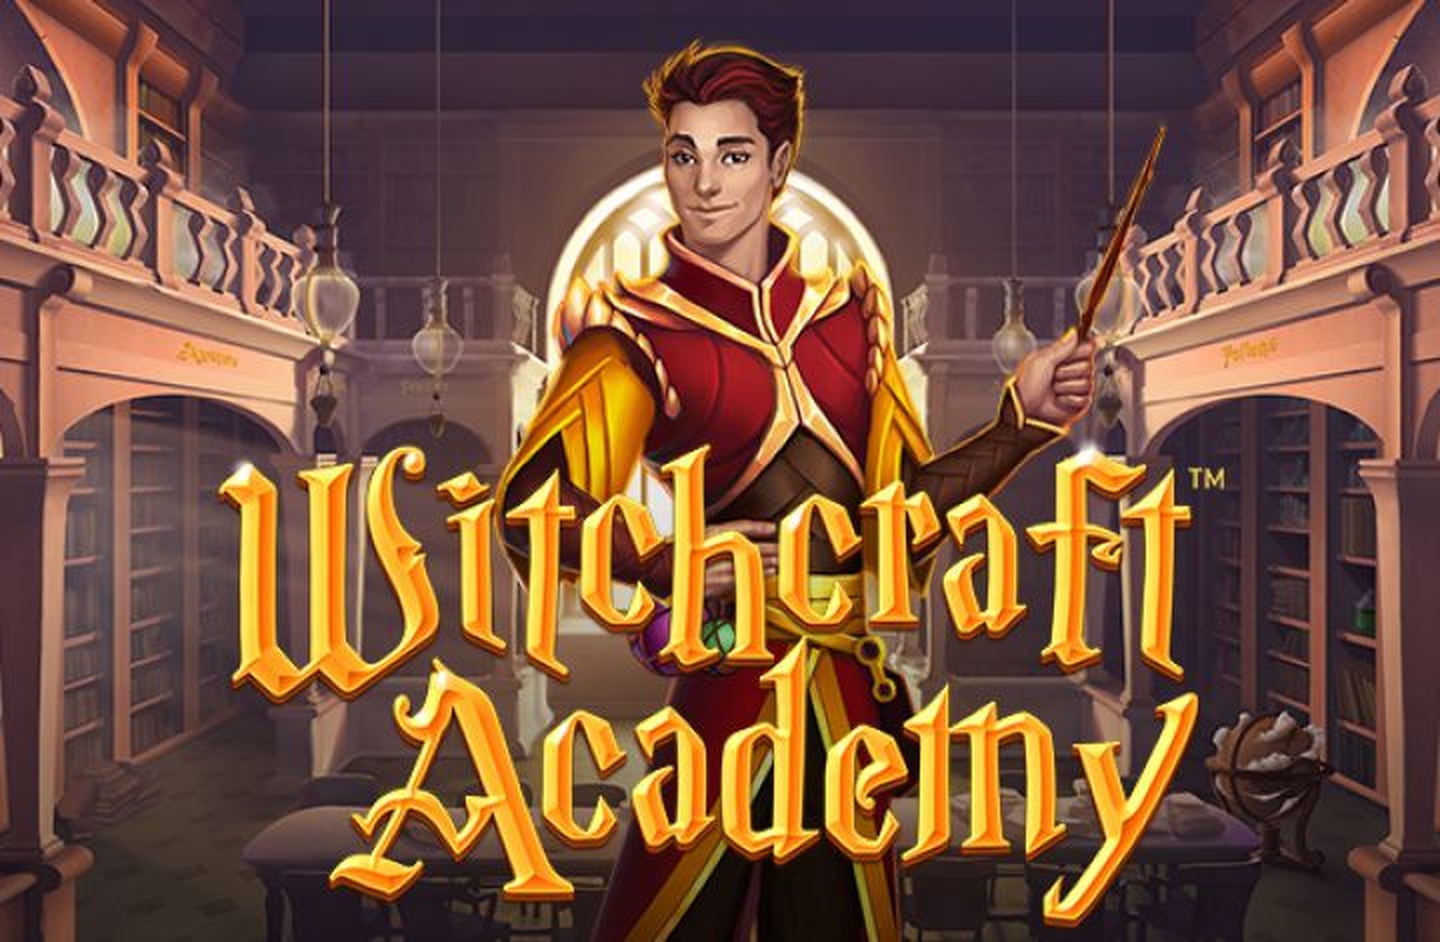 Witchcraft Academy demo